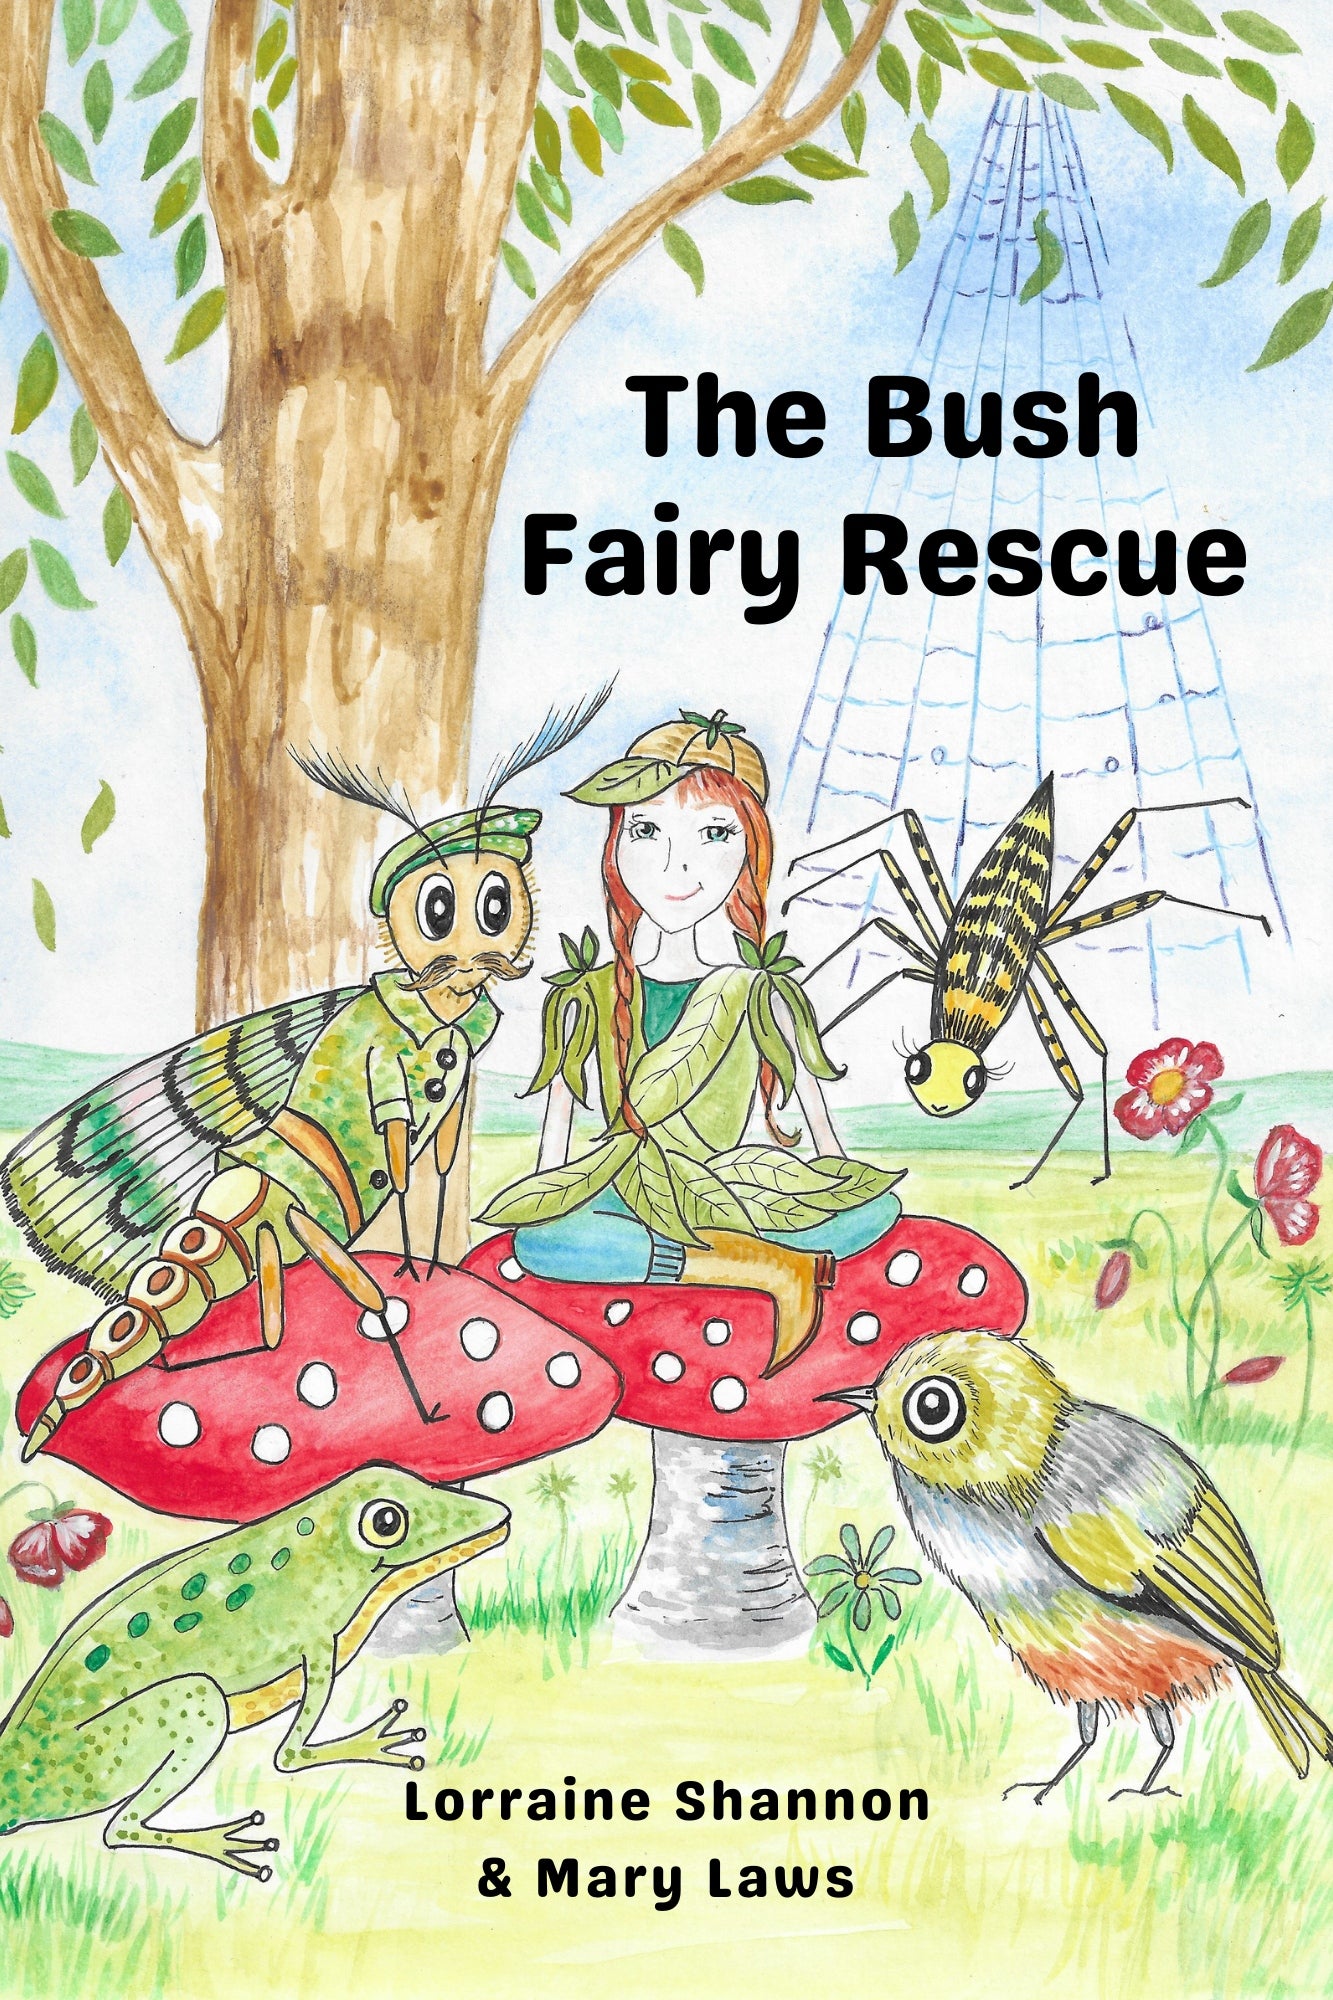 The Bush Fairy Rescue